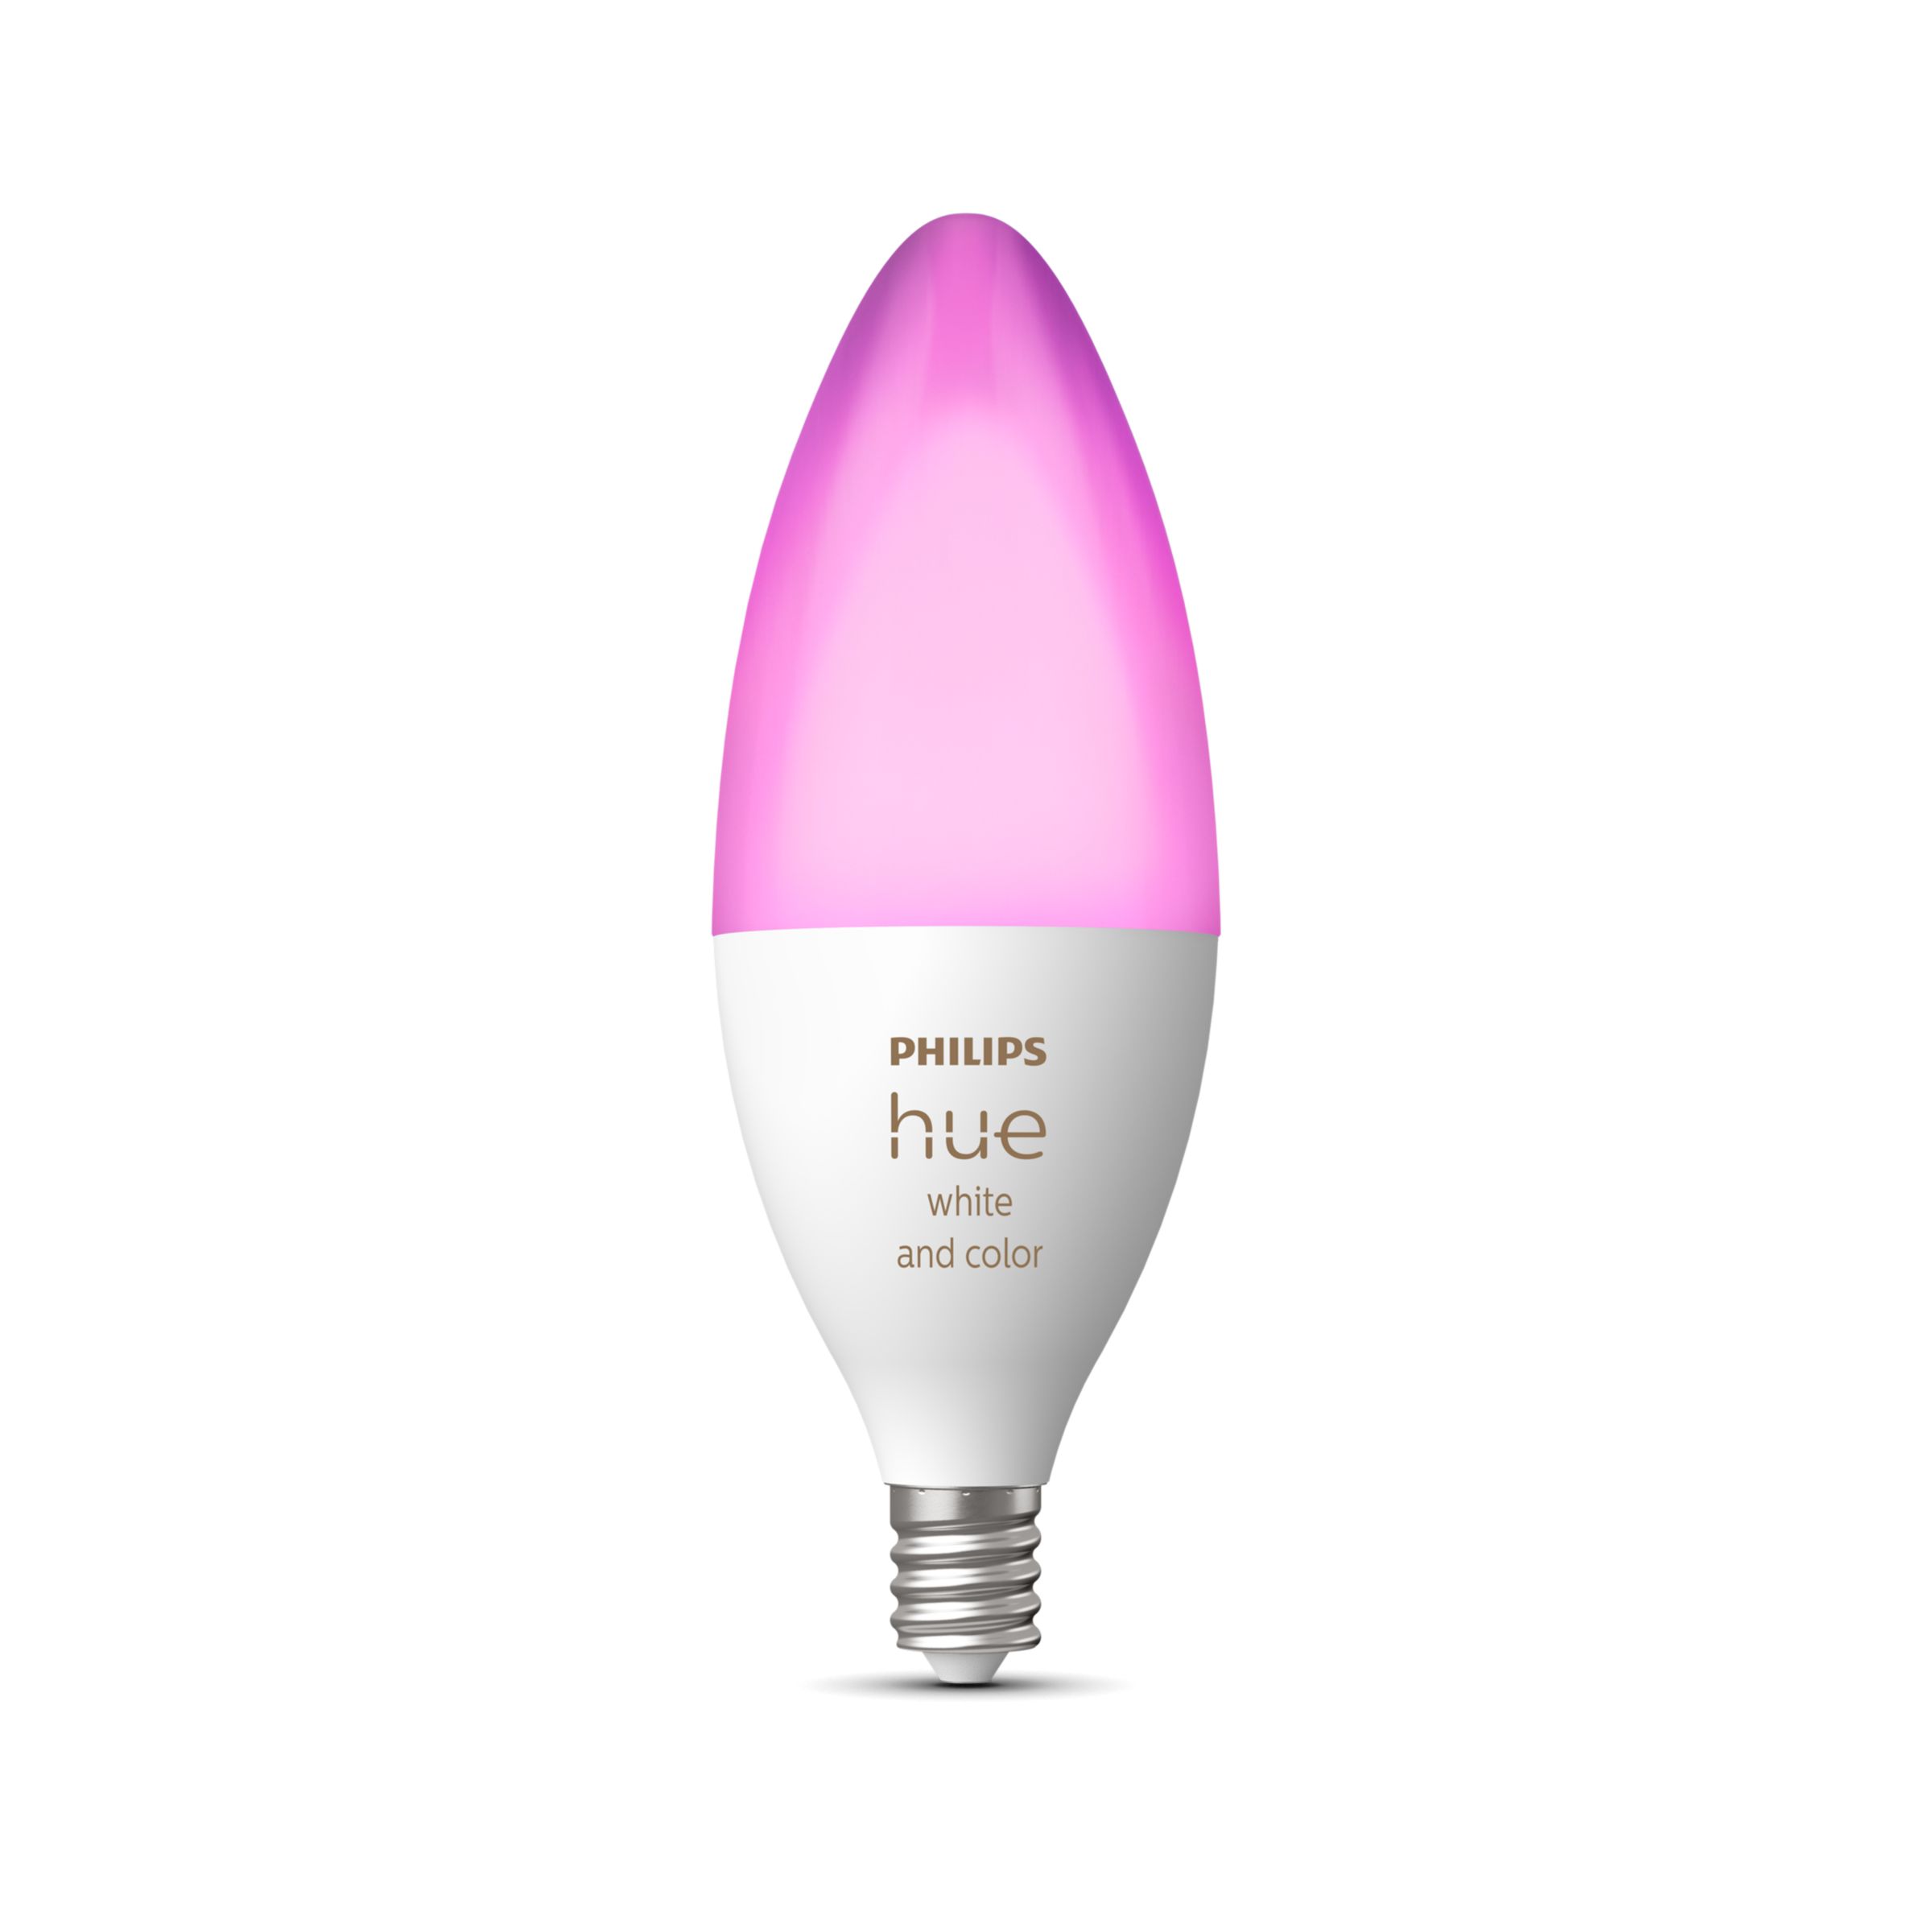 Ampoules DEL E12 WarmGlow Ultra Definition candélabre, 60 W, blanc doux,  3/pqt de PHILIPS